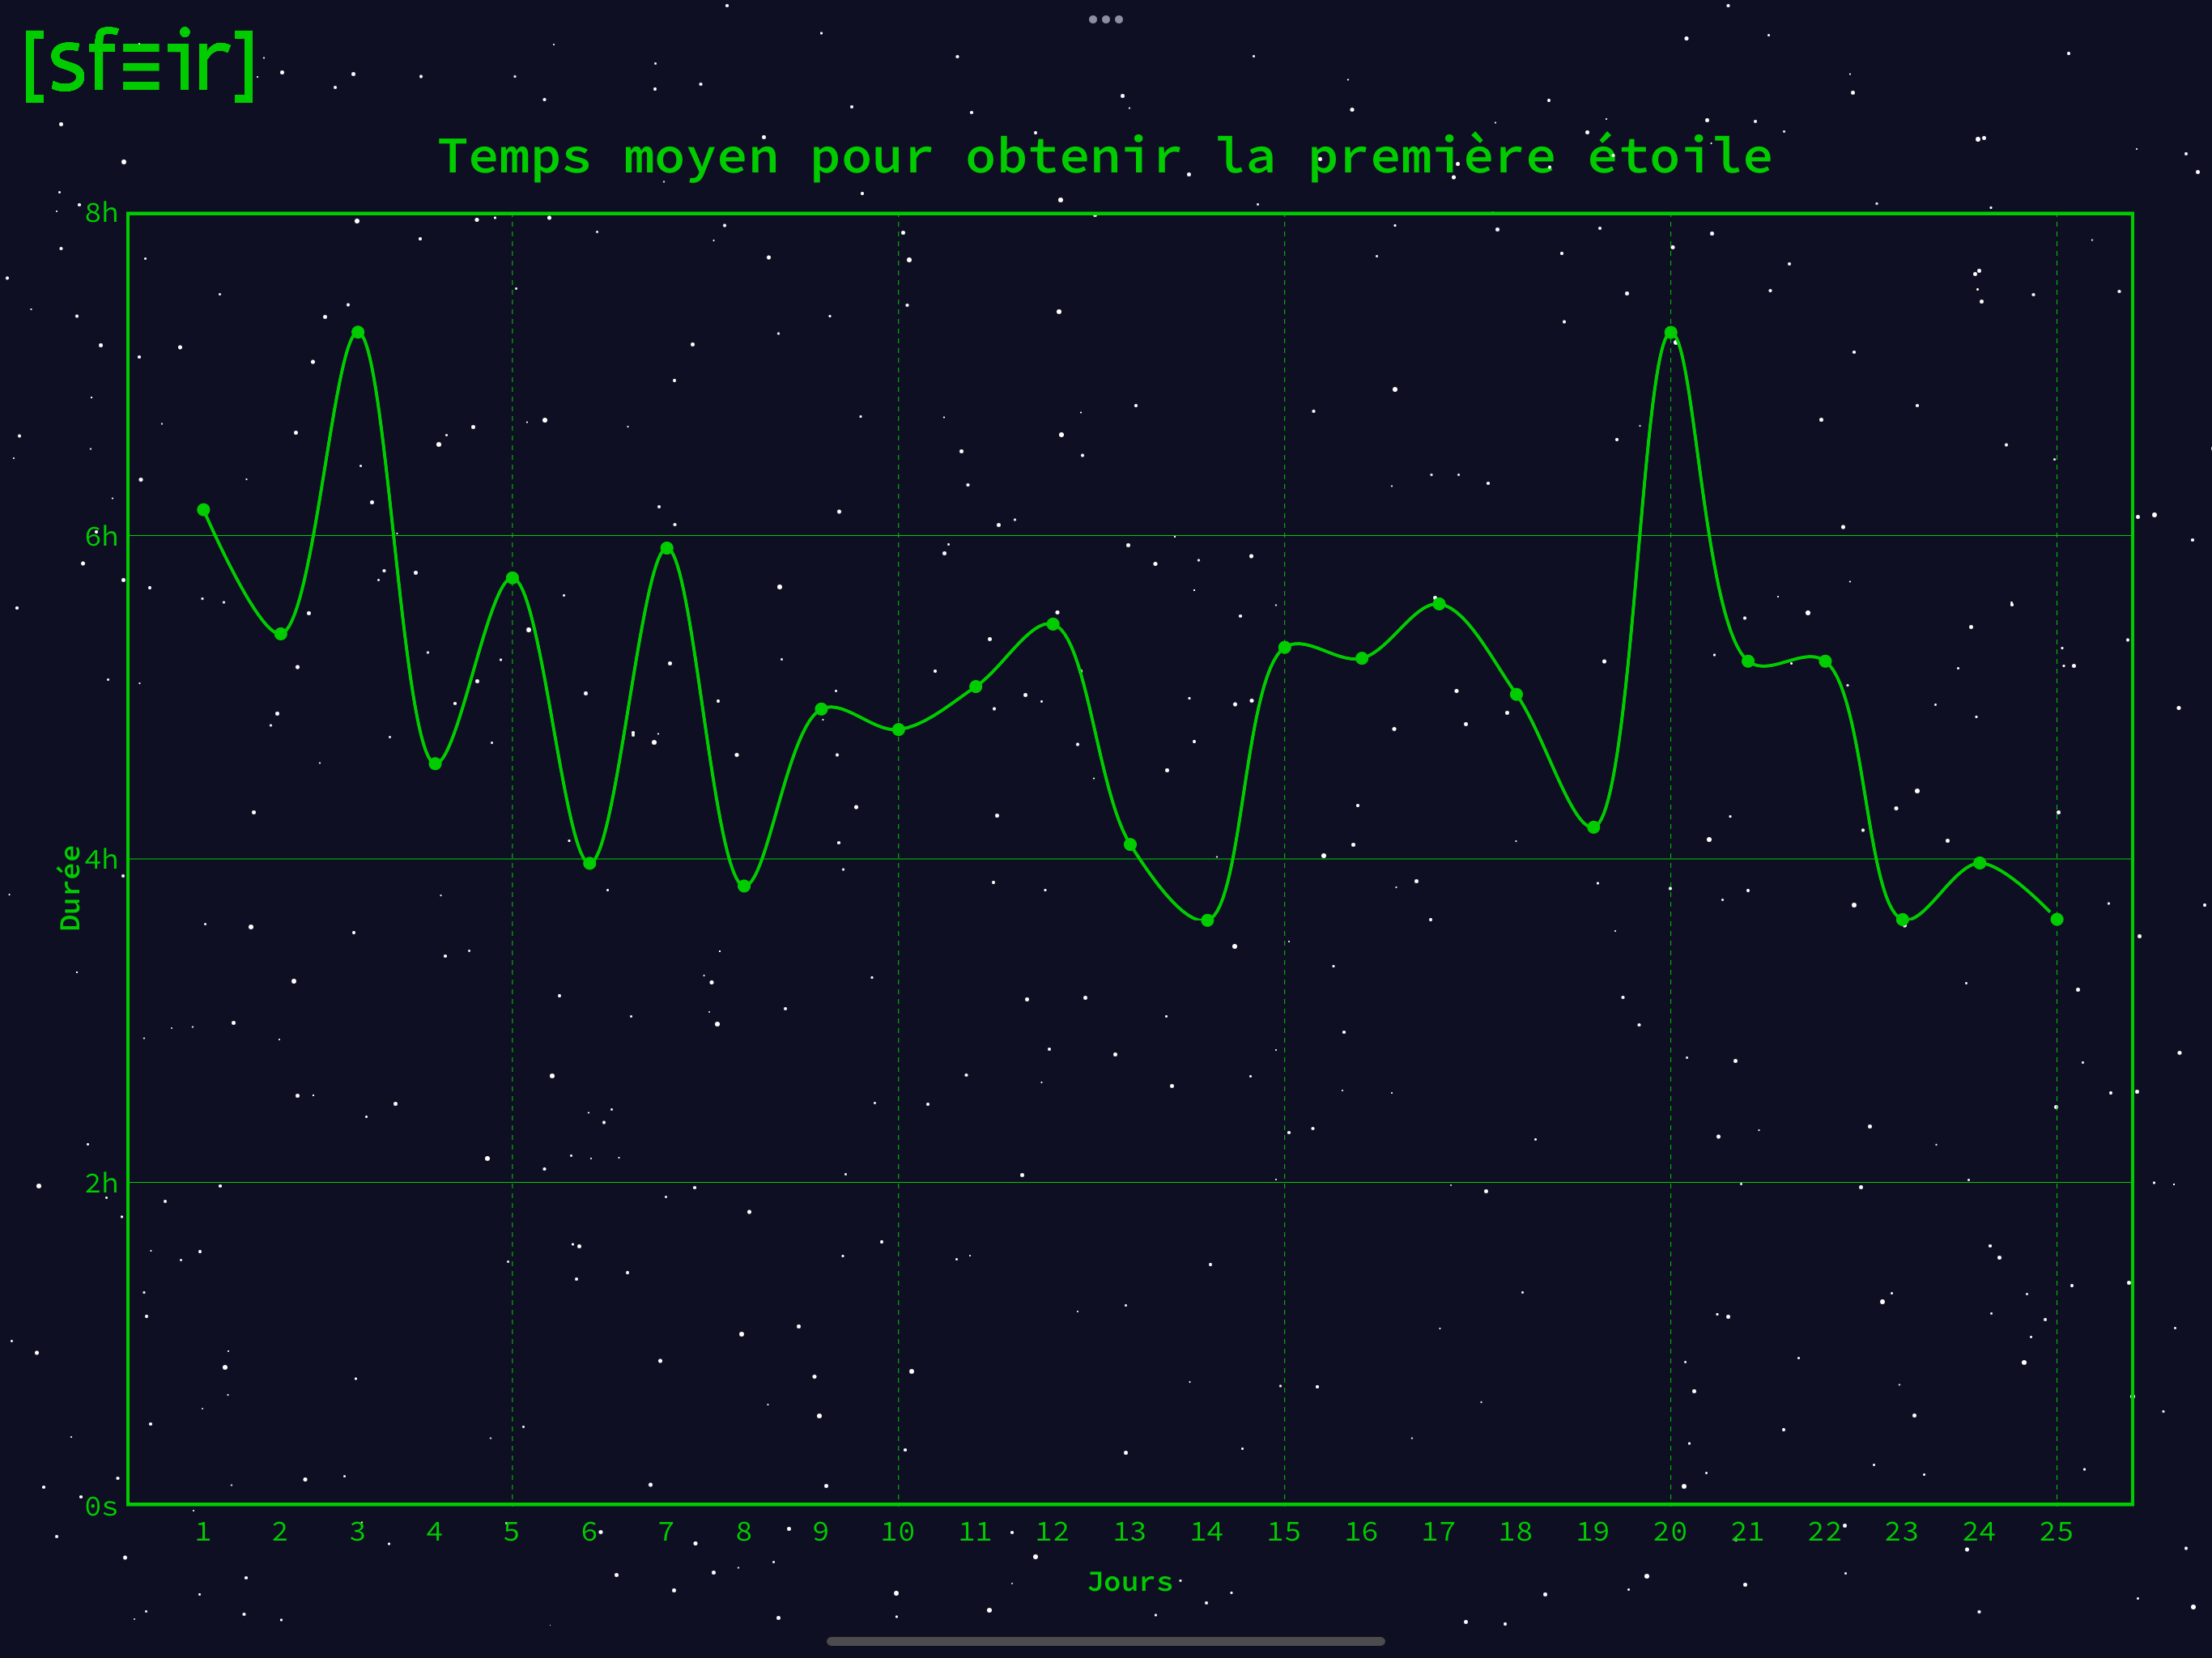 Graphe représentant le temps moyen pour obtenir la première étoile de chaque jour dans ses 24h